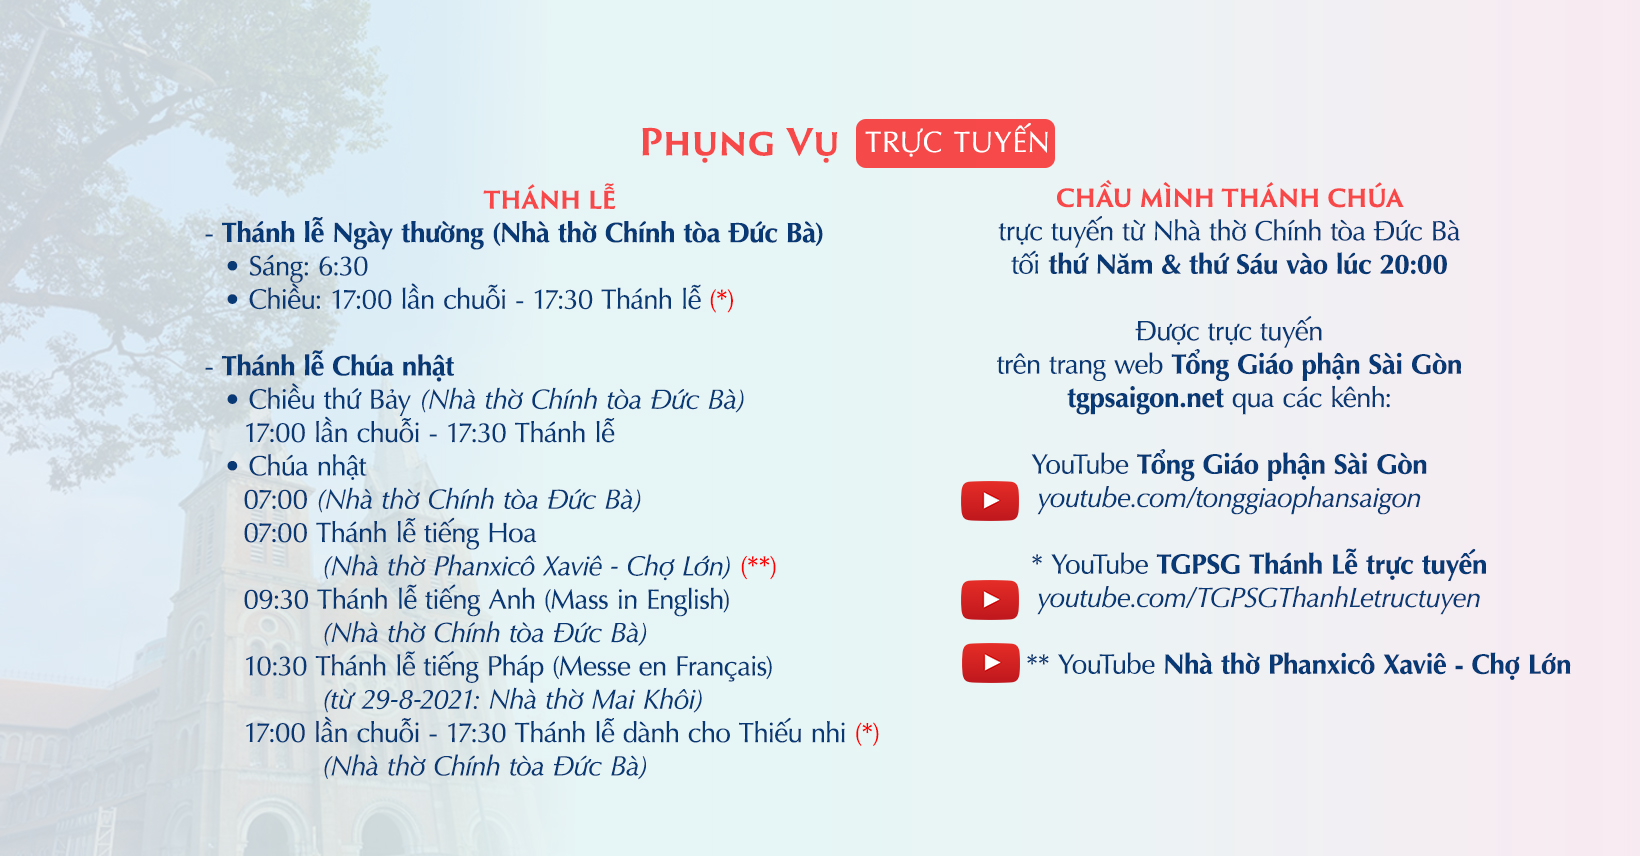 Tổng Giáo phận Sài Gòn: Phụng vụ trực tuyến từ 13-9-2021 đến 18-9-2021